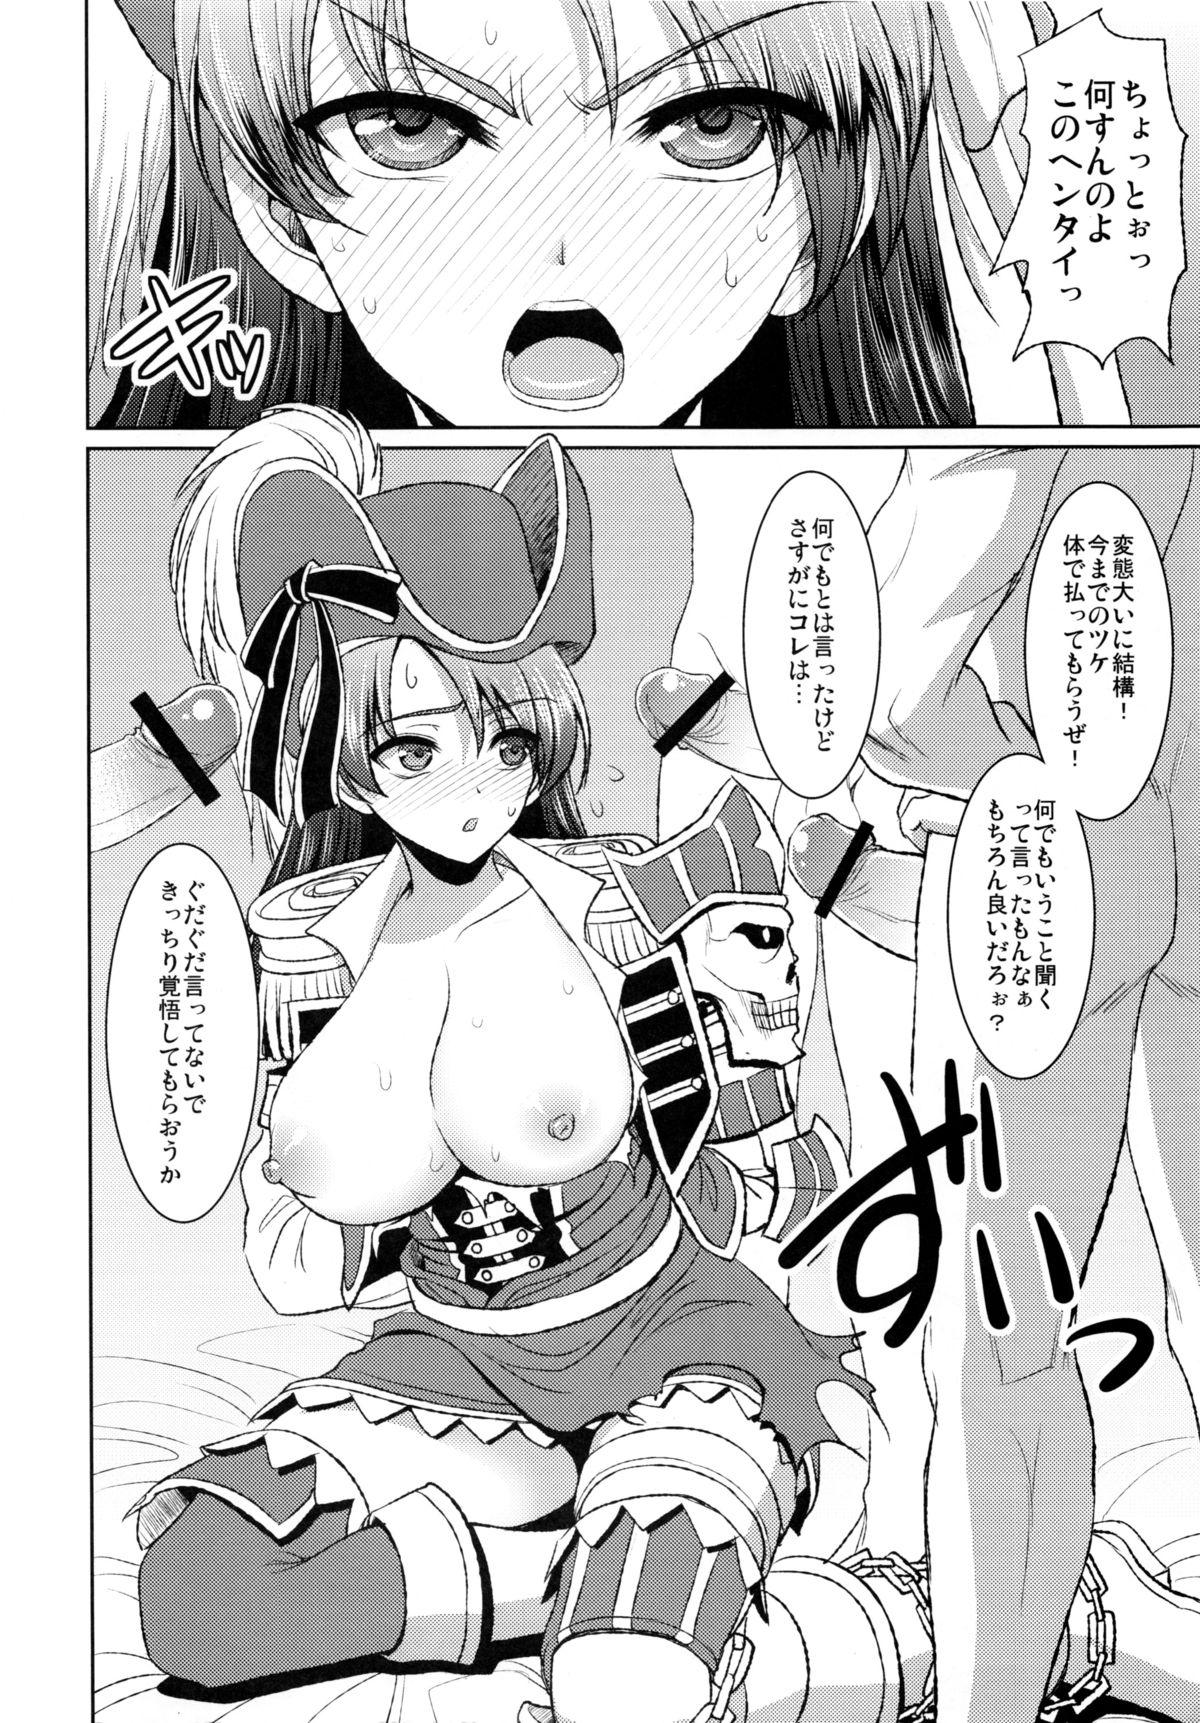 Rola Kaizoku Musume no Gosan - Monster hunter Siririca - Page 5